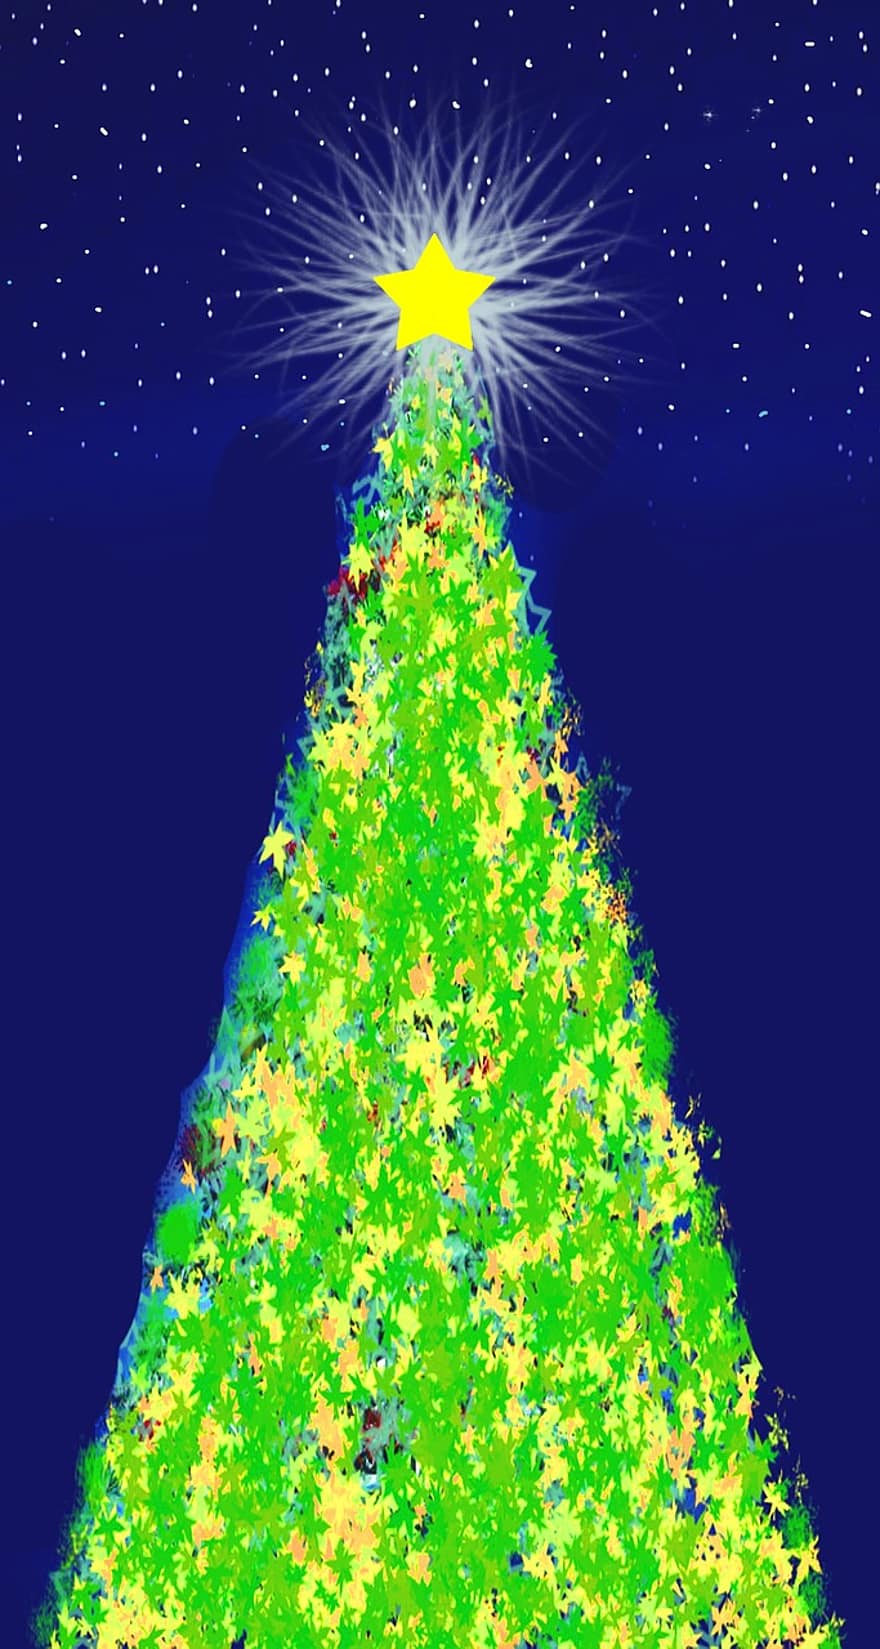 Vánoce, vánoční hvězda, corona, hvězda, jedle, vánoční strom, příchod, noc, sníh, nebe, modrý